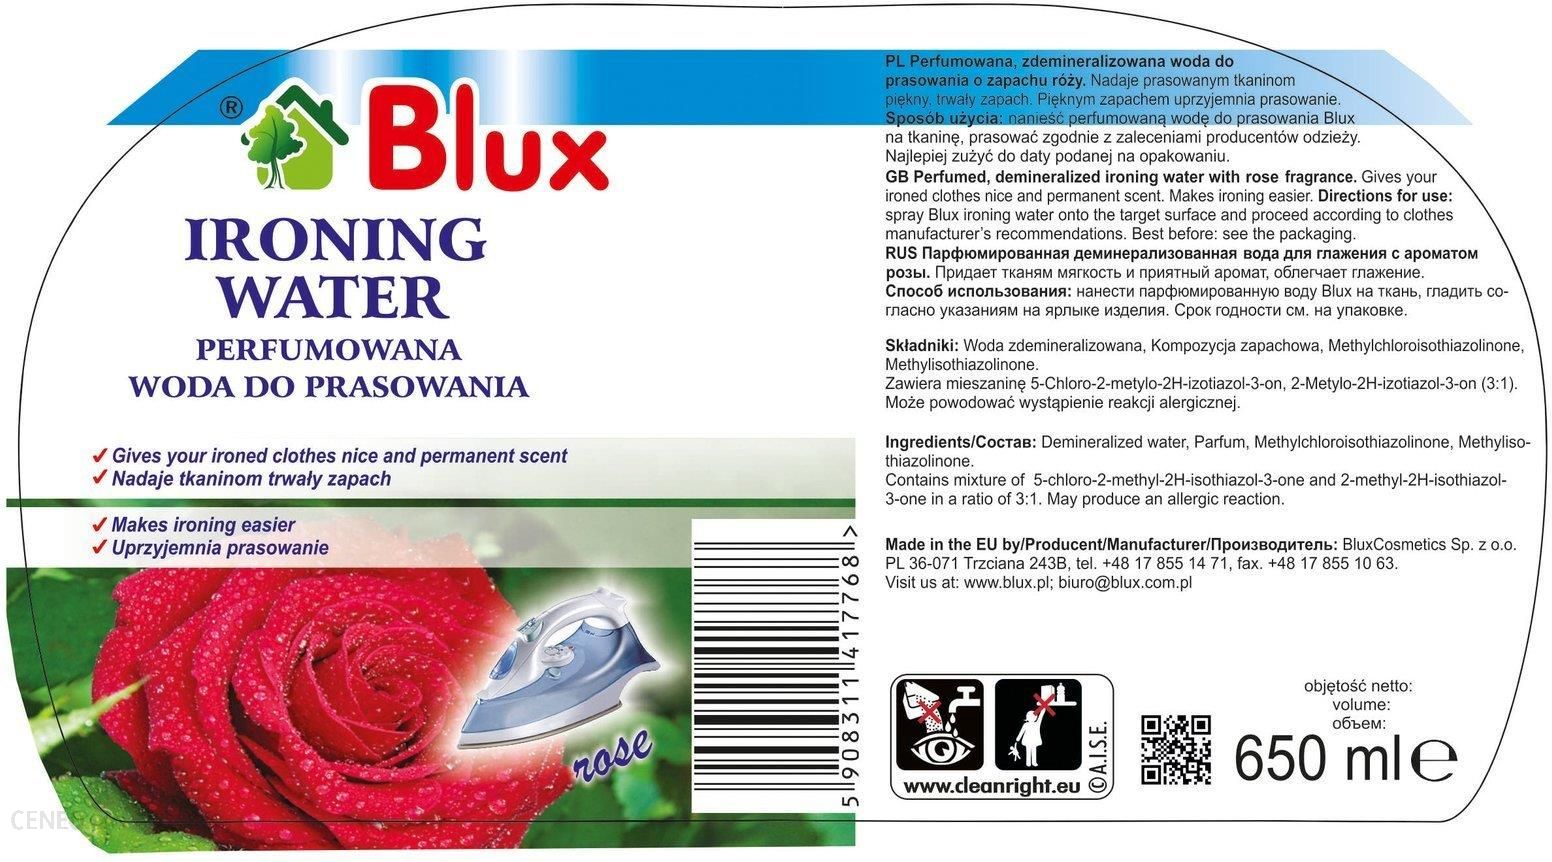 Blux Perfumowana Woda Do Prasowania Róża 650ml